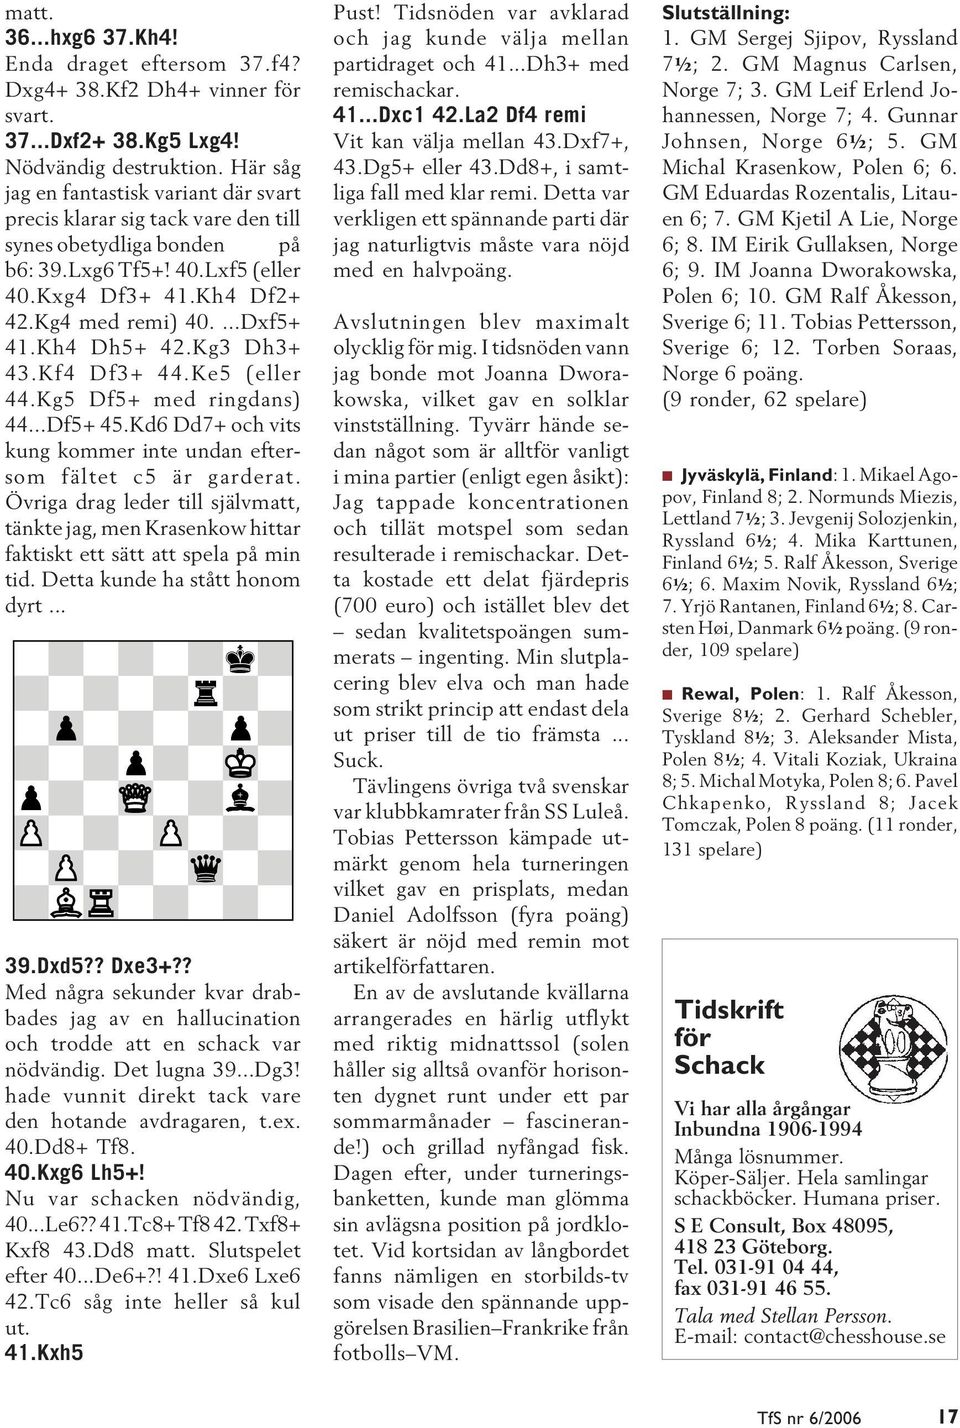 Kh4 Dh5+ 42.Kg3 Dh3+ 43.Kf4 Df3+ 44.Ke5 (eller 44.Kg5 Df5+ med ringdans) 44...Df5+ 45.Kd6 Dd7+ och vits kung kommer inte undan eftersom fältet c5 är garderat.